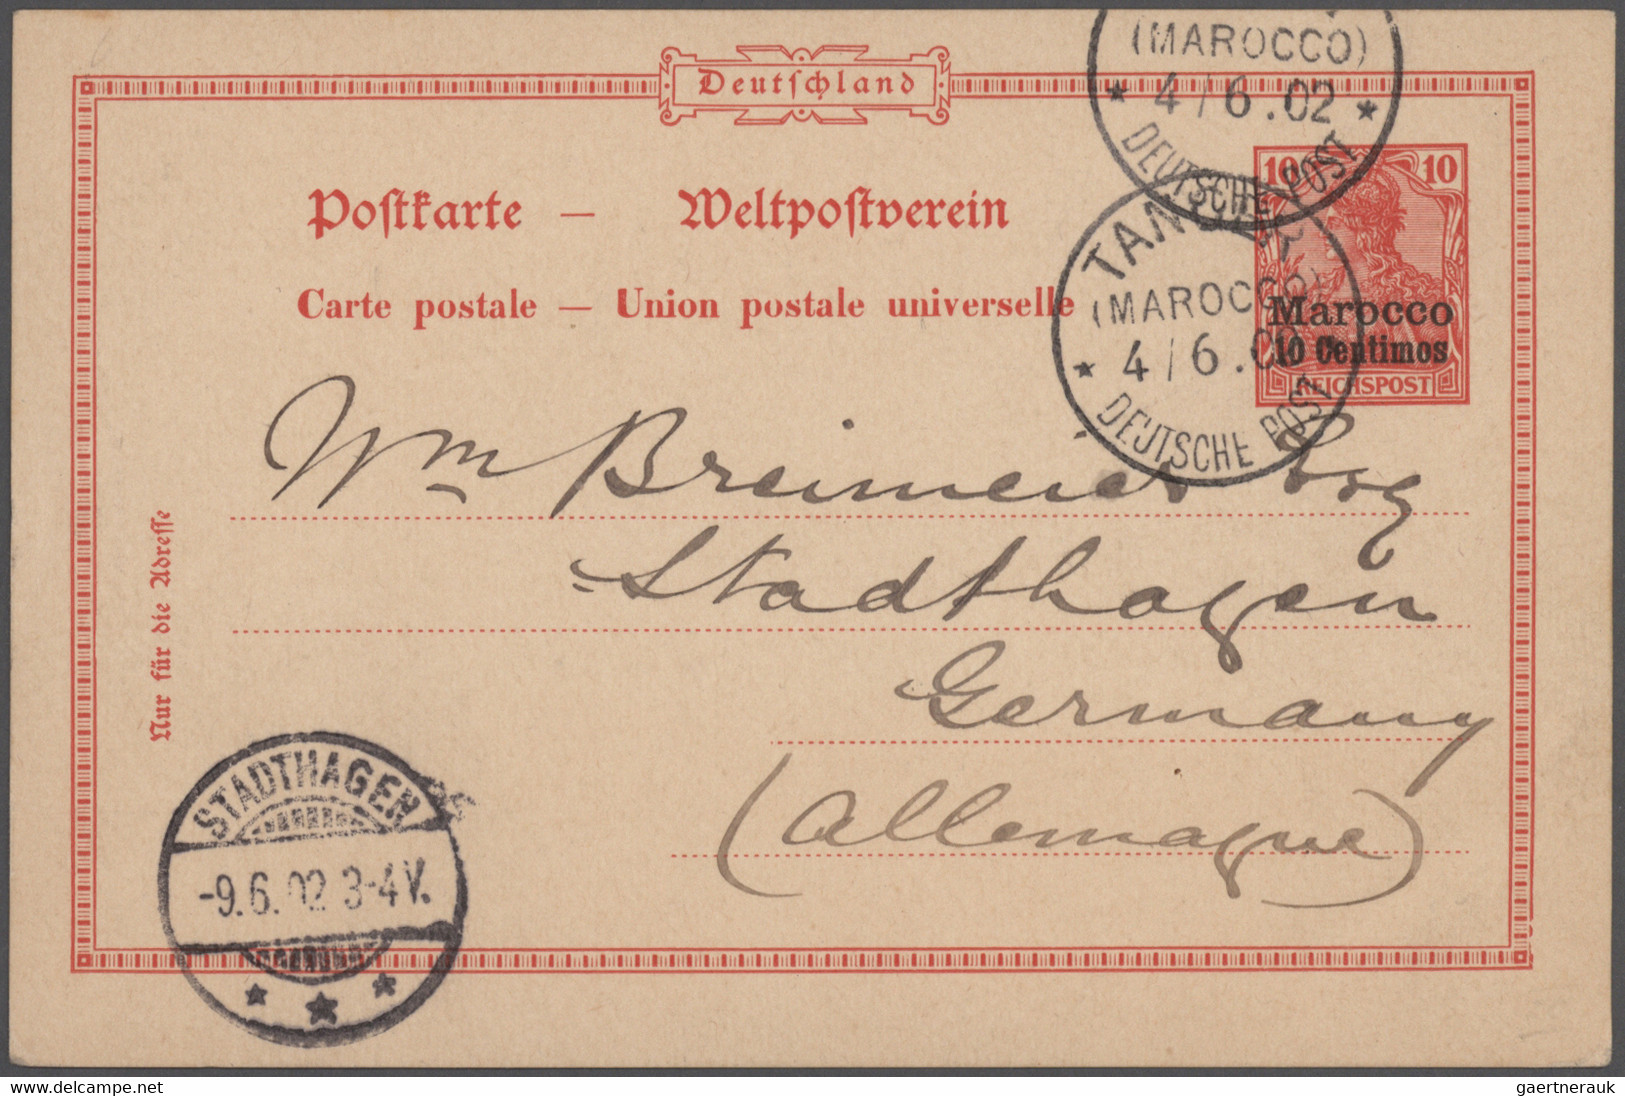 Deutsche Kolonien: 1899/1915, saubere Ganzsachen-Sammlung von China bis Togo mit ca. 300 Stück teils